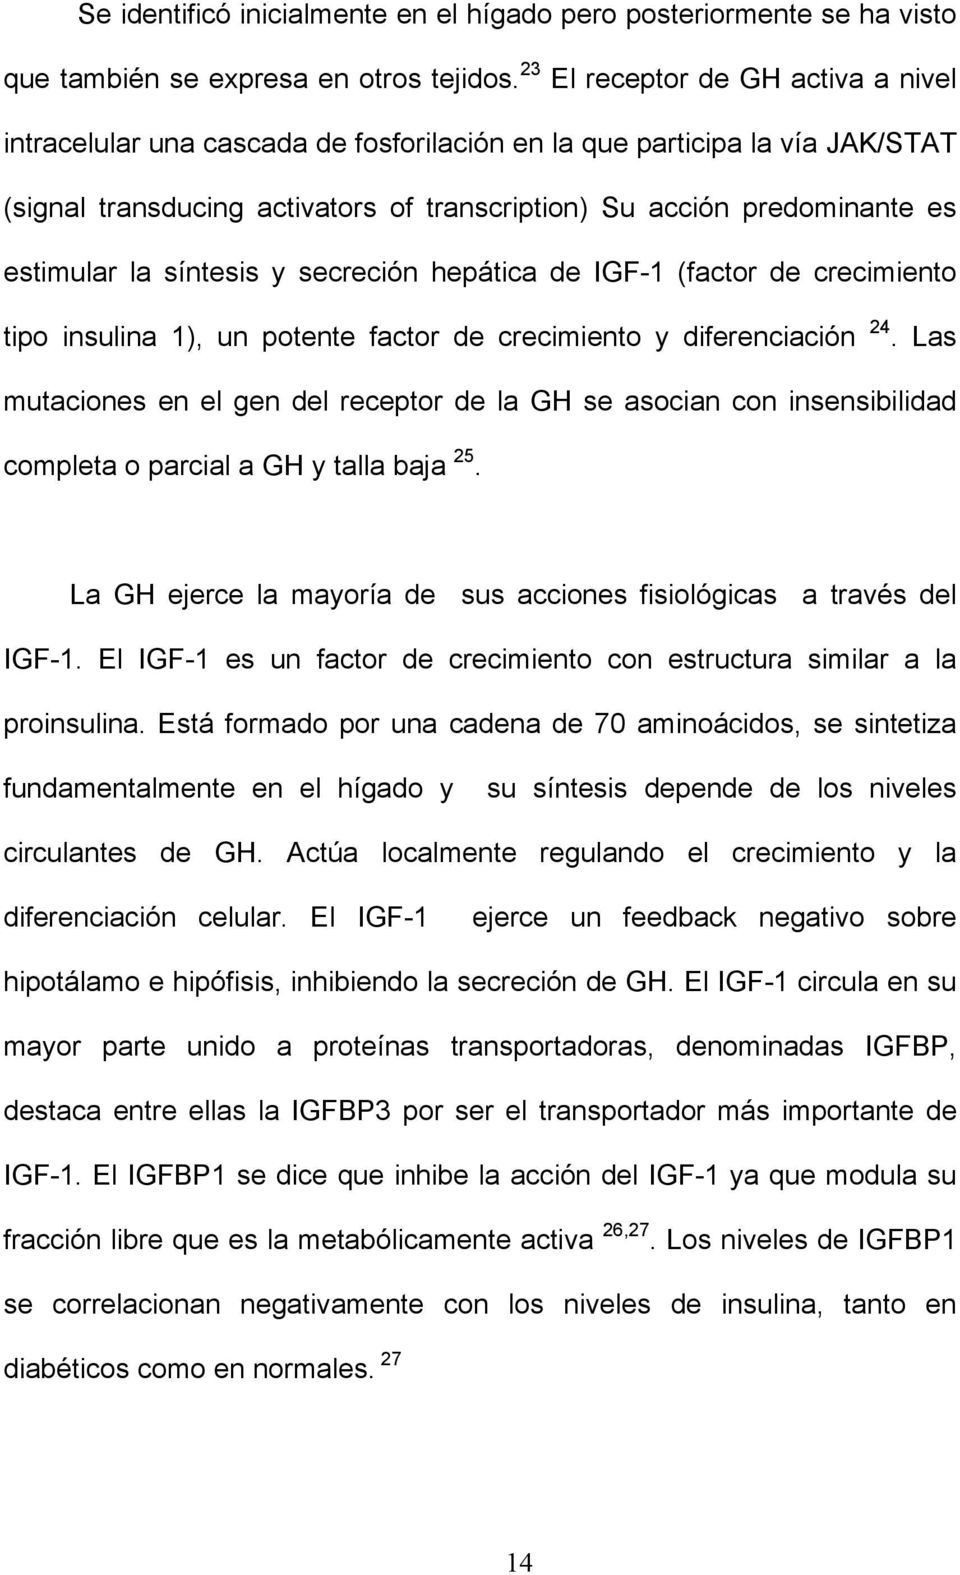 la síntesis y secreción hepática de IGF-1 (factor de crecimiento tipo insulina 1), un potente factor de crecimiento y diferenciación 24.